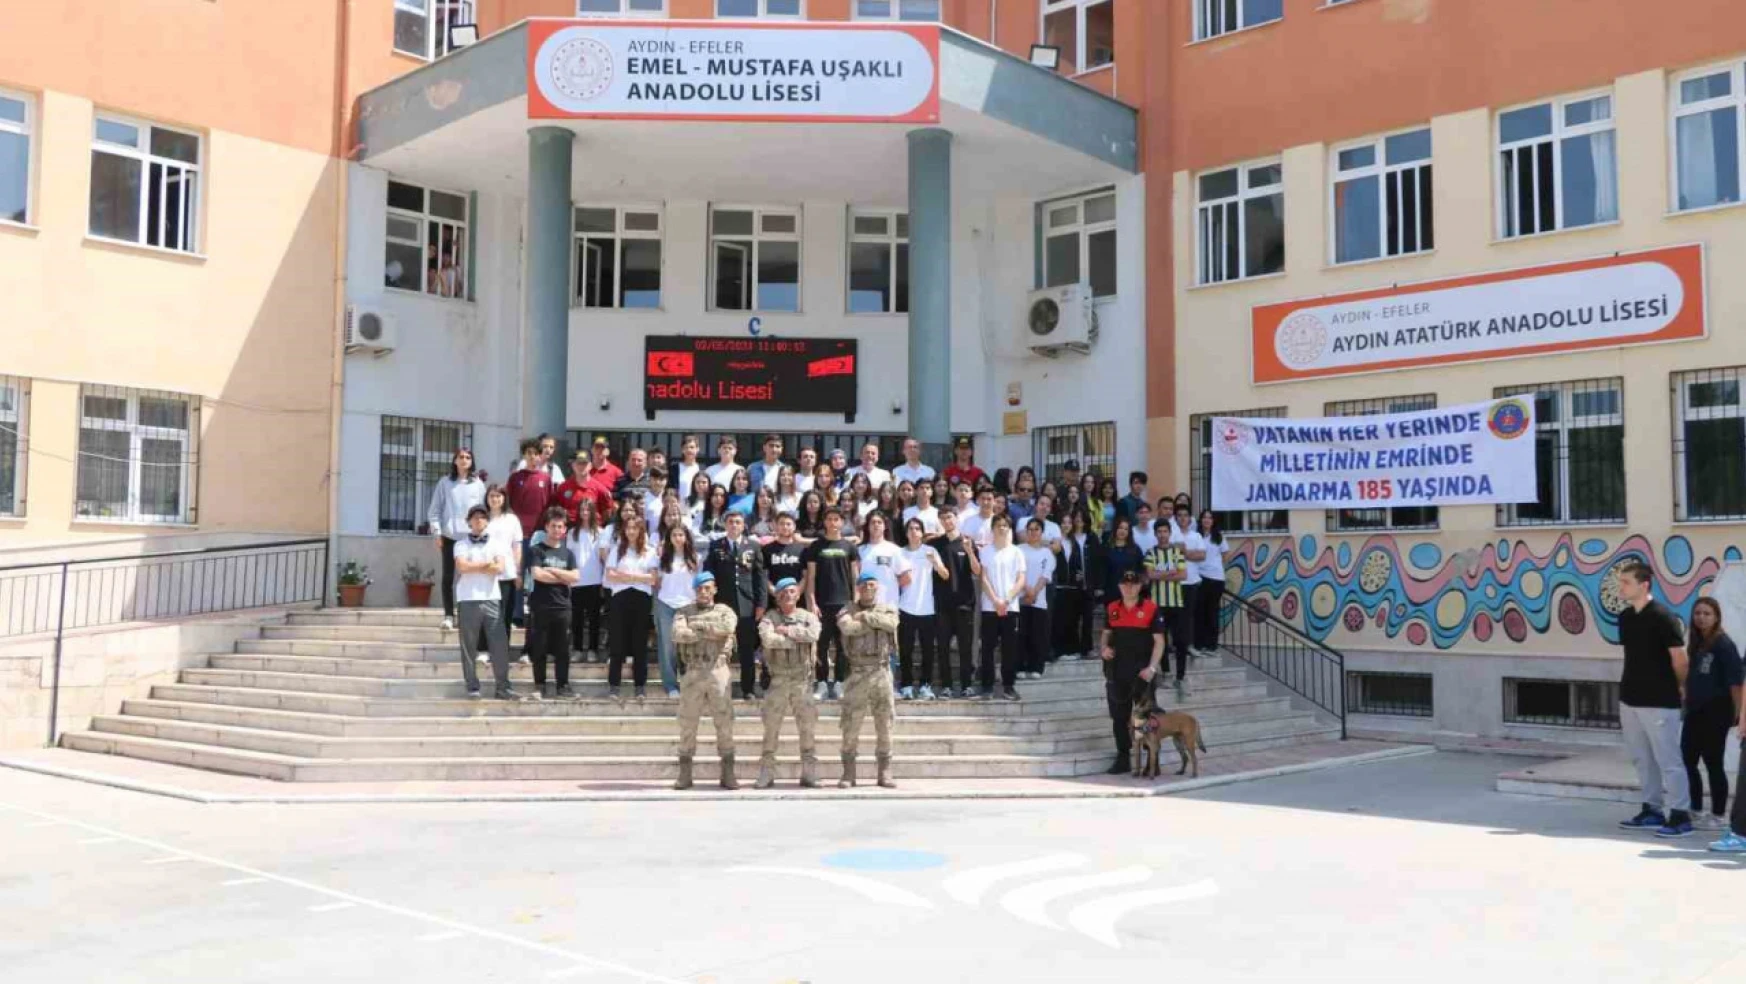 Aydın'da jandarmanın çalışmaları lise öğrencilerine tanıtıldı